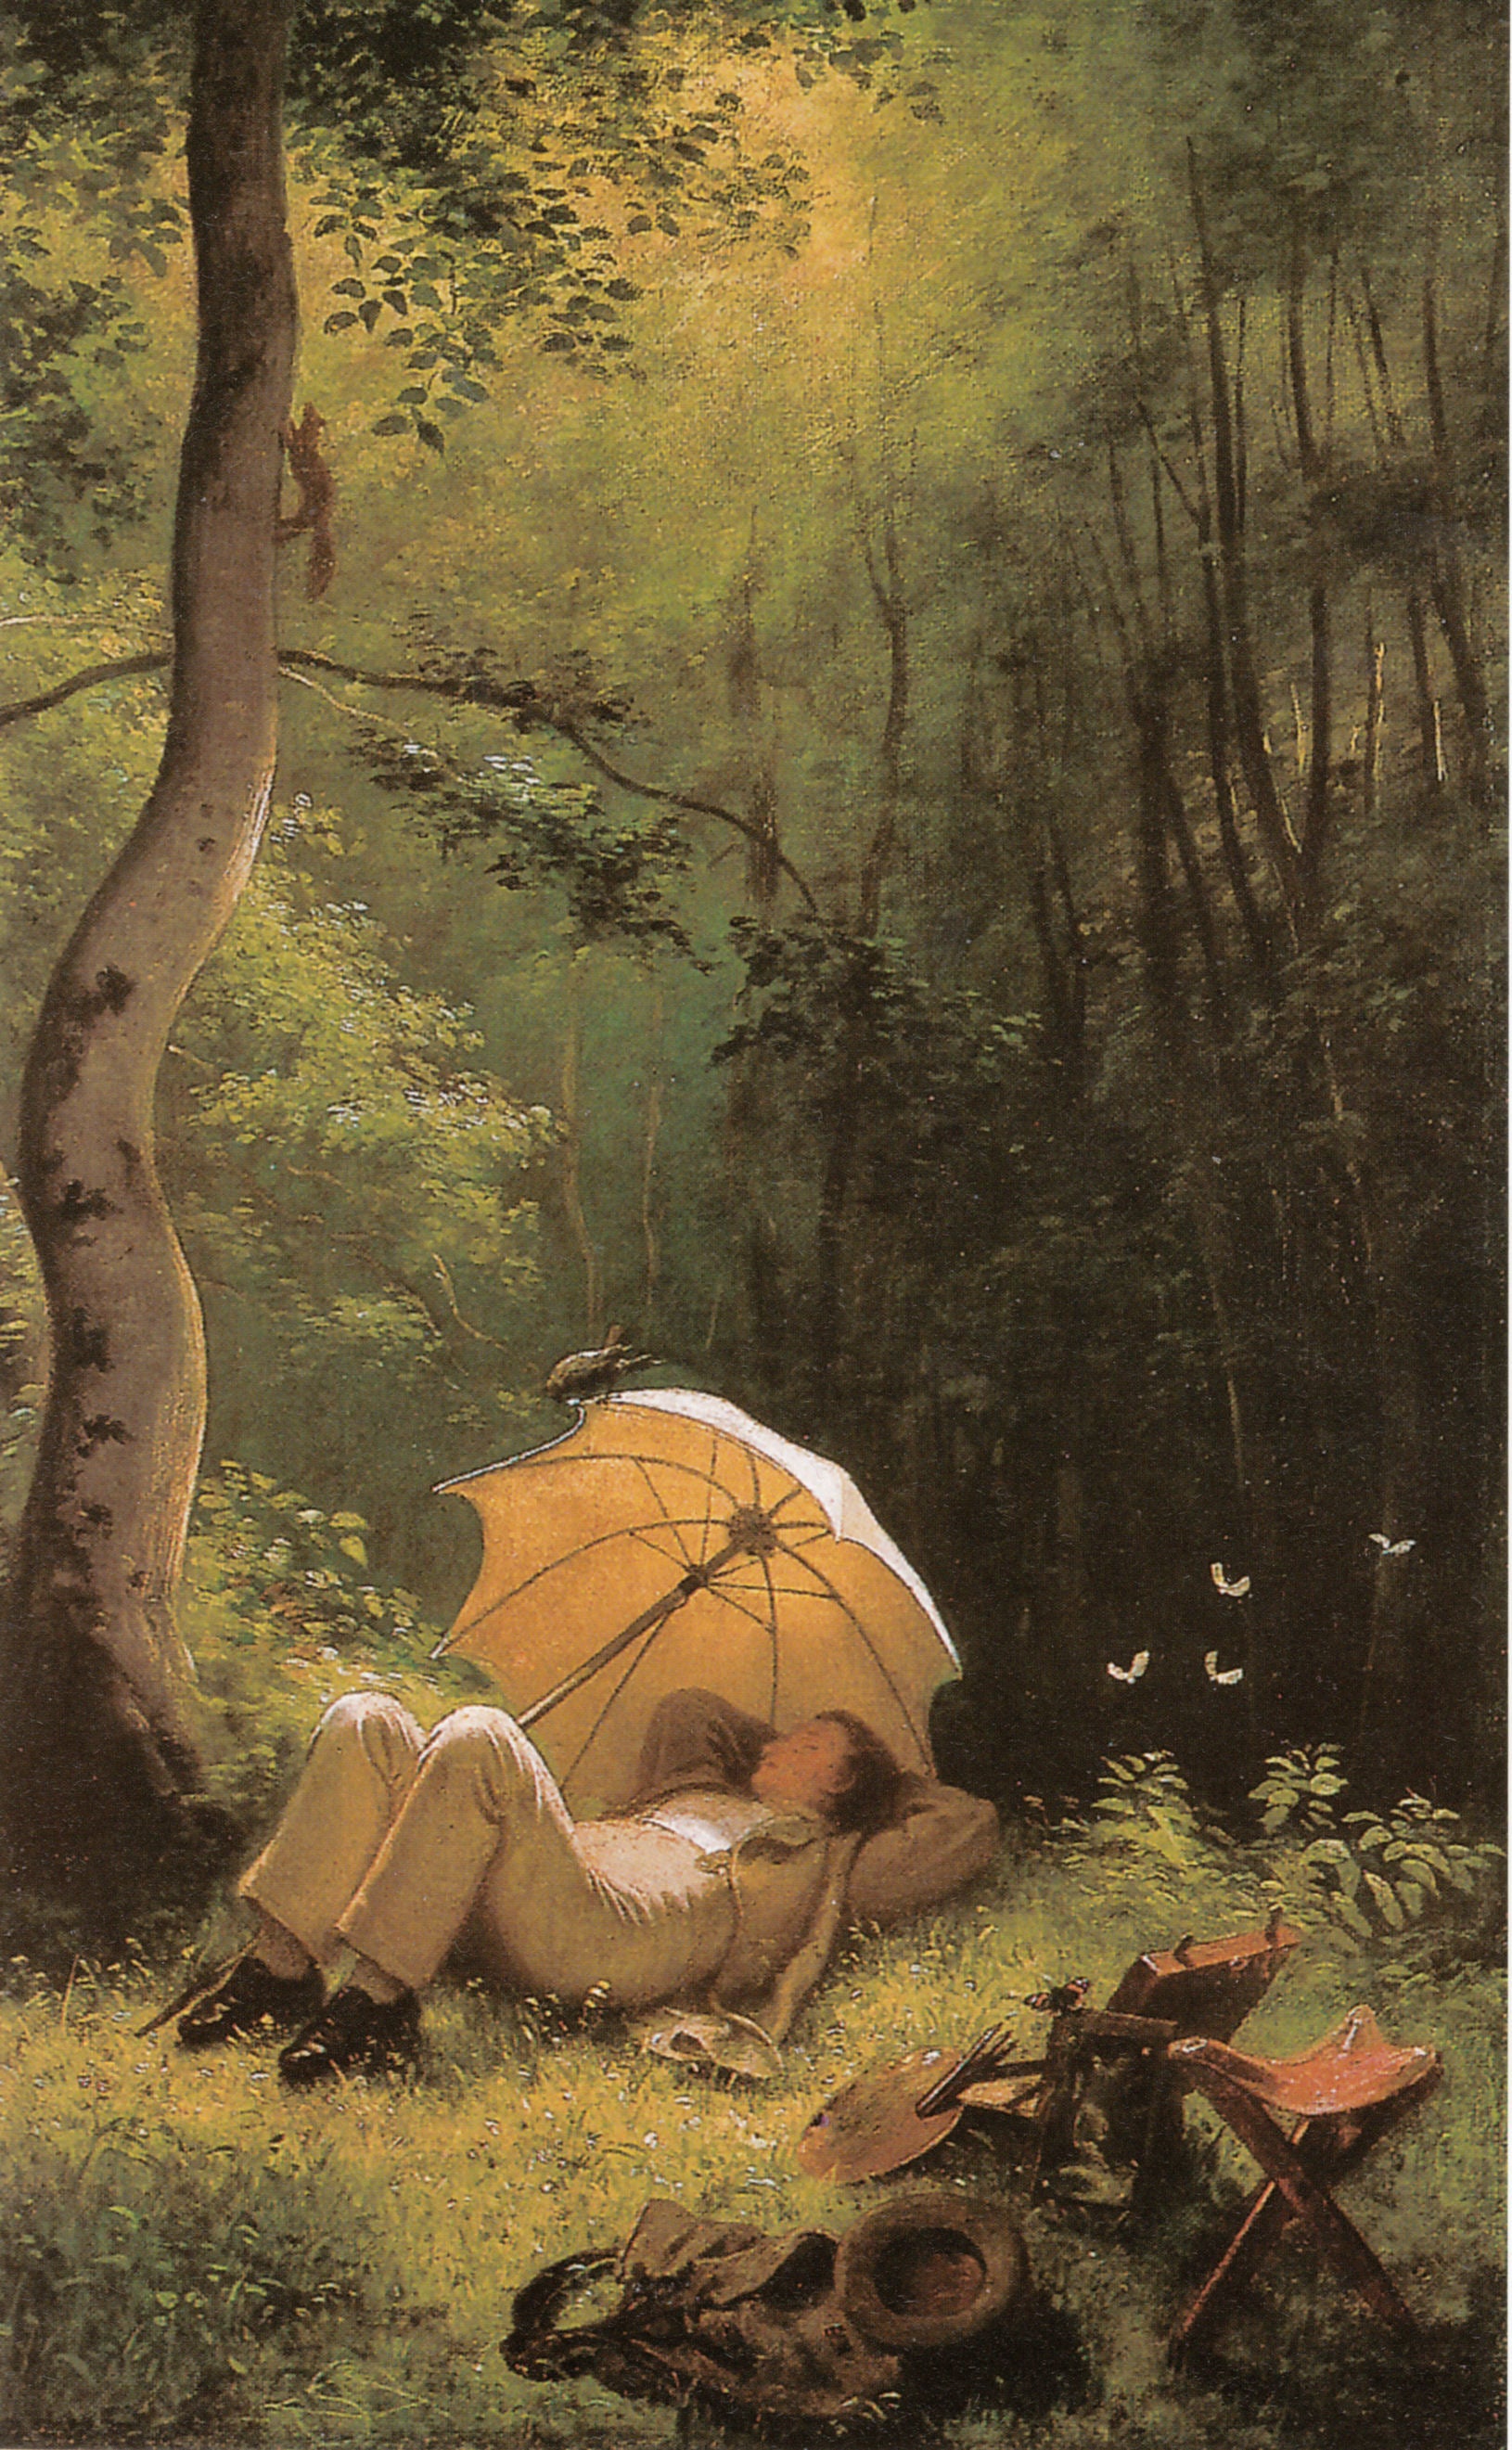 Le Peintre dans une clairière allongé sous un parasol - Carl Spitzweg